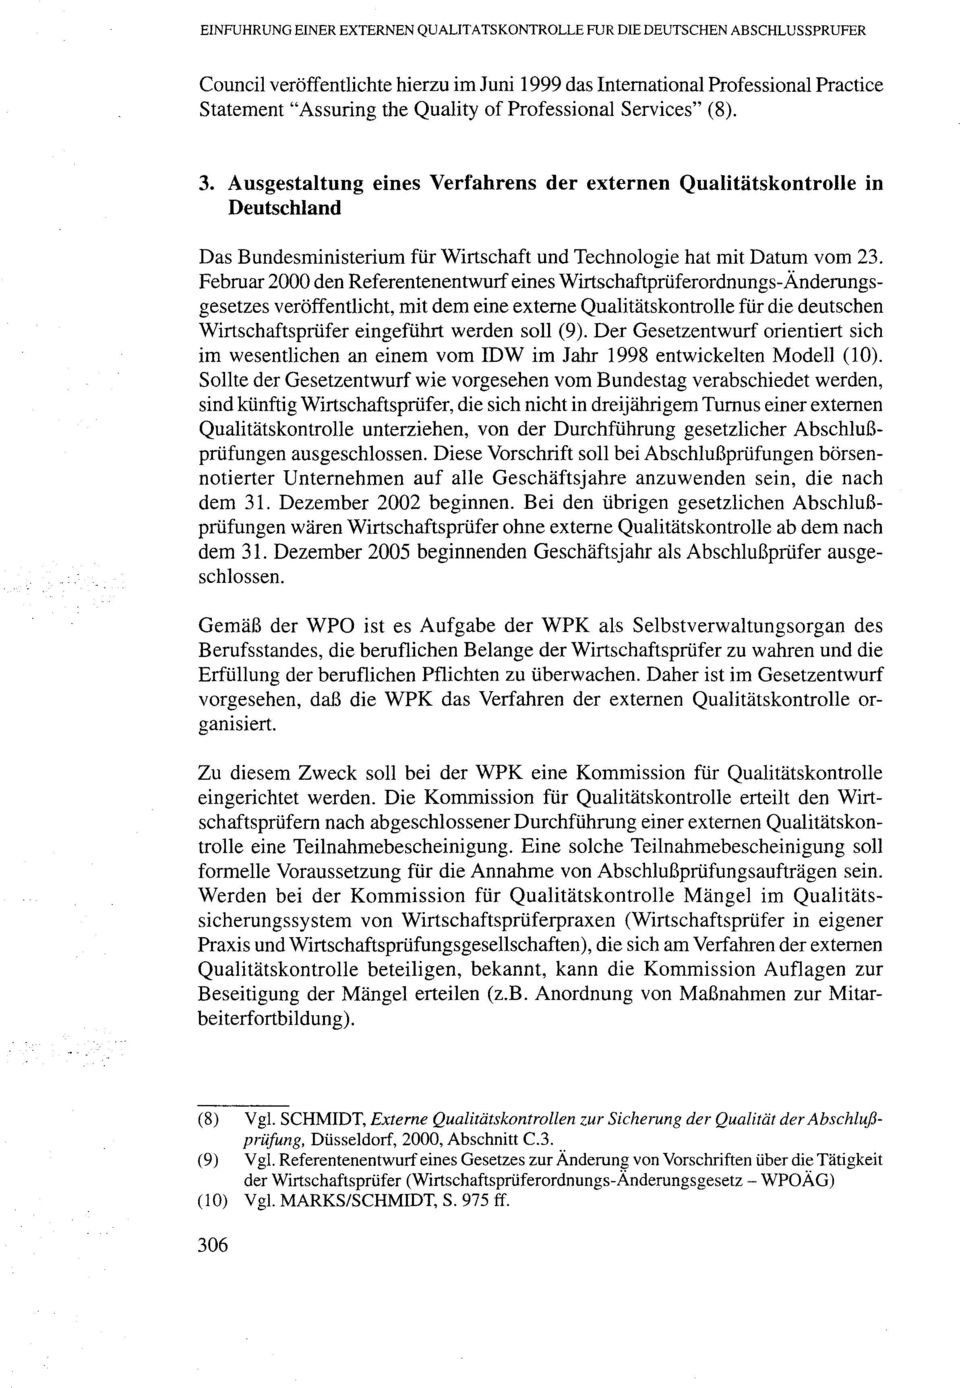 Februar 2000 den Referentenentwurf eines Wirtschaftpriiferordnungs-Anderungsgesetzes veroffentlicht, mit dem eine externe Qualitatskontrolle fur die deutschen Wirtschaftspriifer eingefiihrt werden